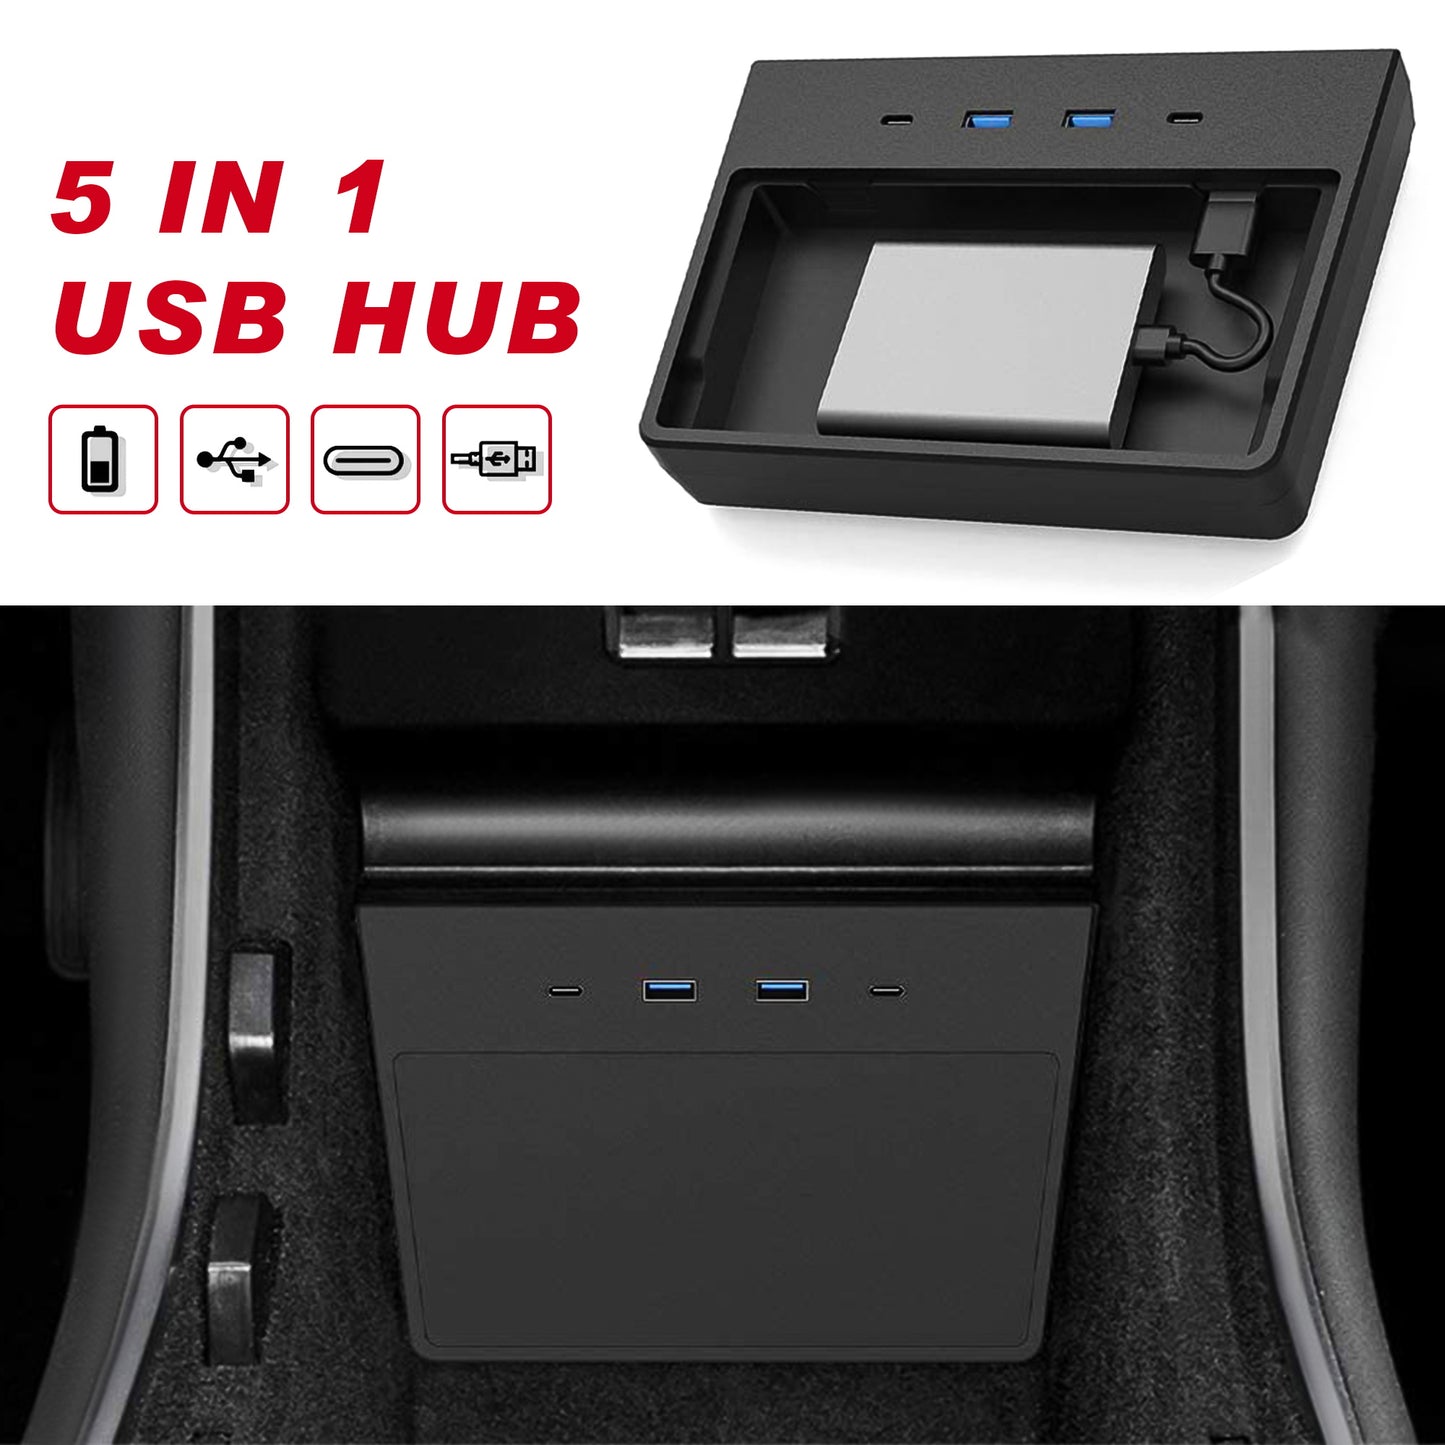 Puertos USB Hub 5 en 1 diseñados a medida para el modelo 3 (NO para el modelo Y)